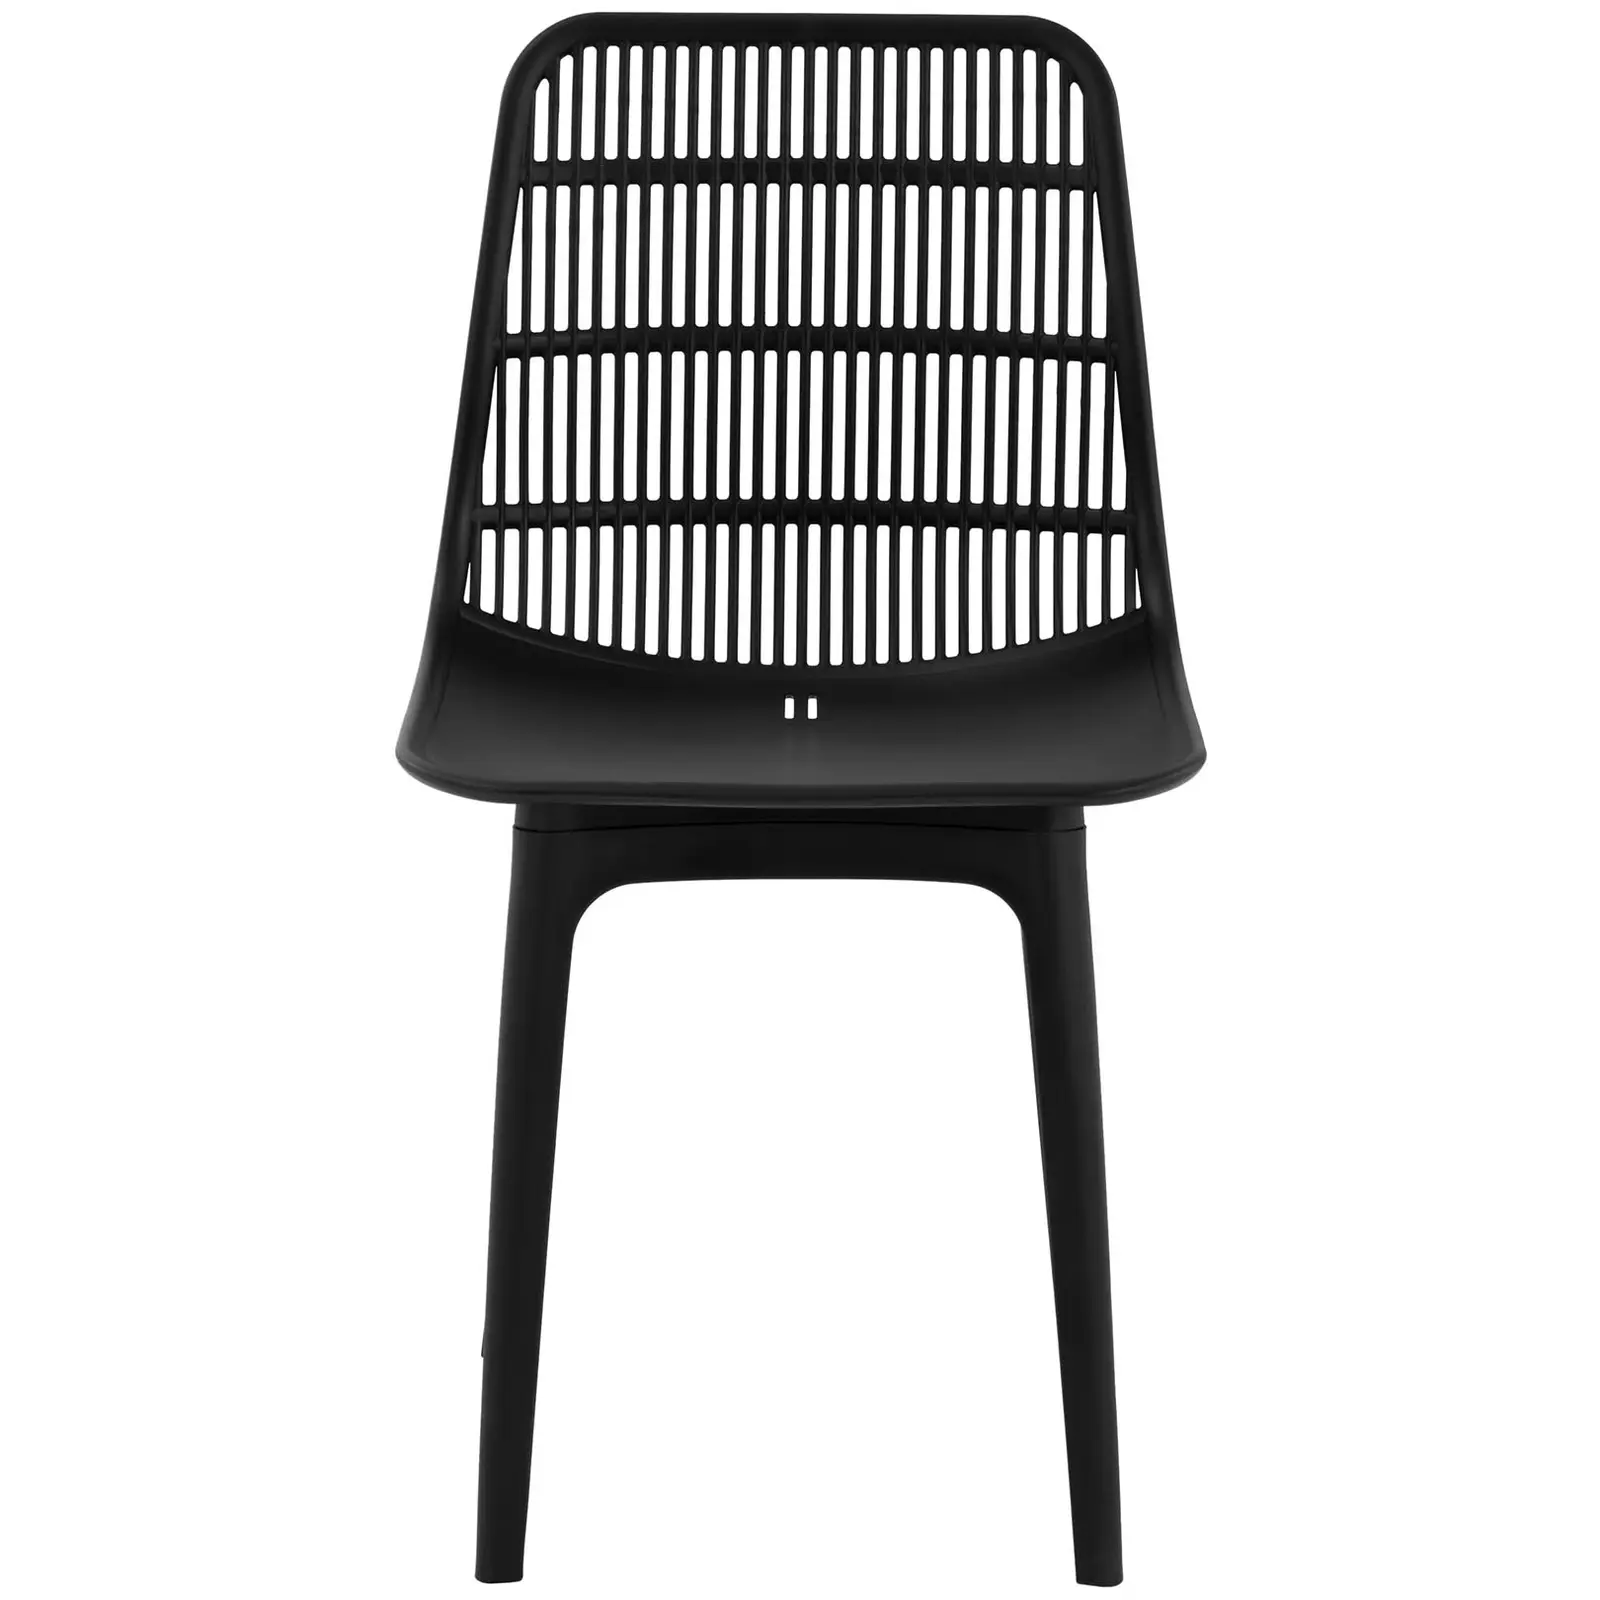 Produtos recondicionados Cadeiras - 2 un. - Royal Catering - até 150 kg - encostos com aberturas - em preto